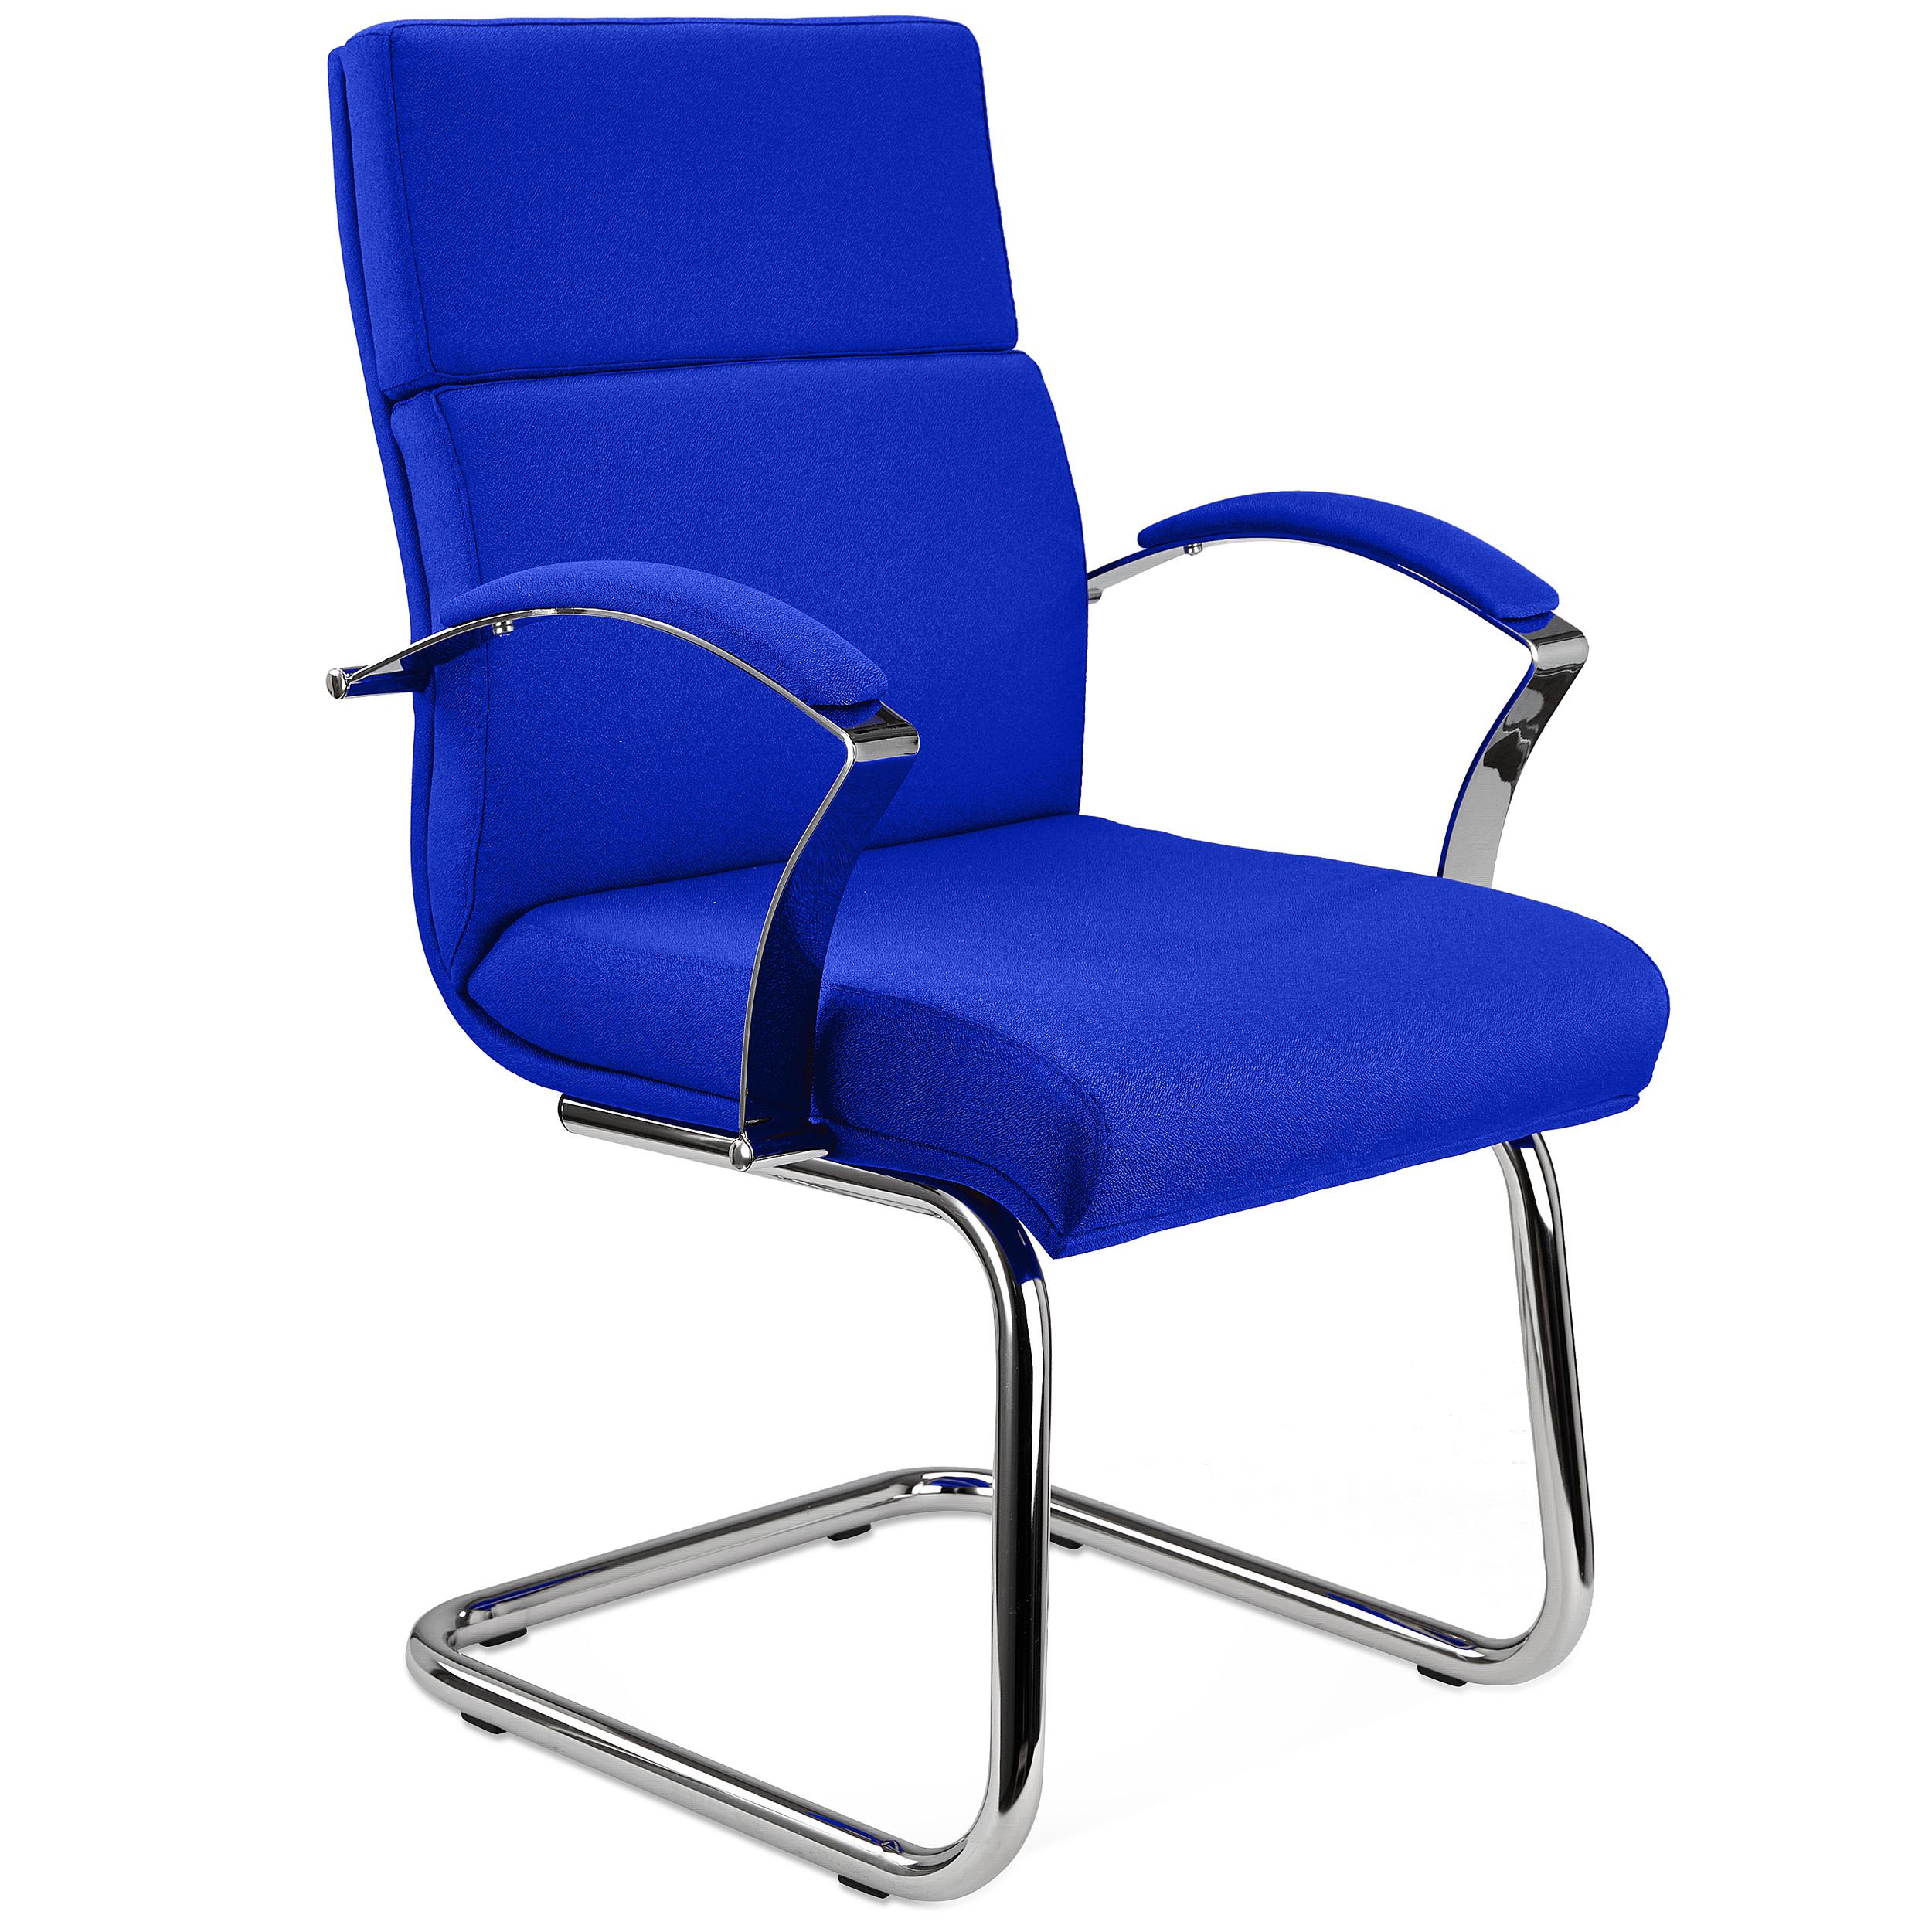 Chaise visiteur RABAT TISSU, Grande Qualité et Design, couleur Bleu